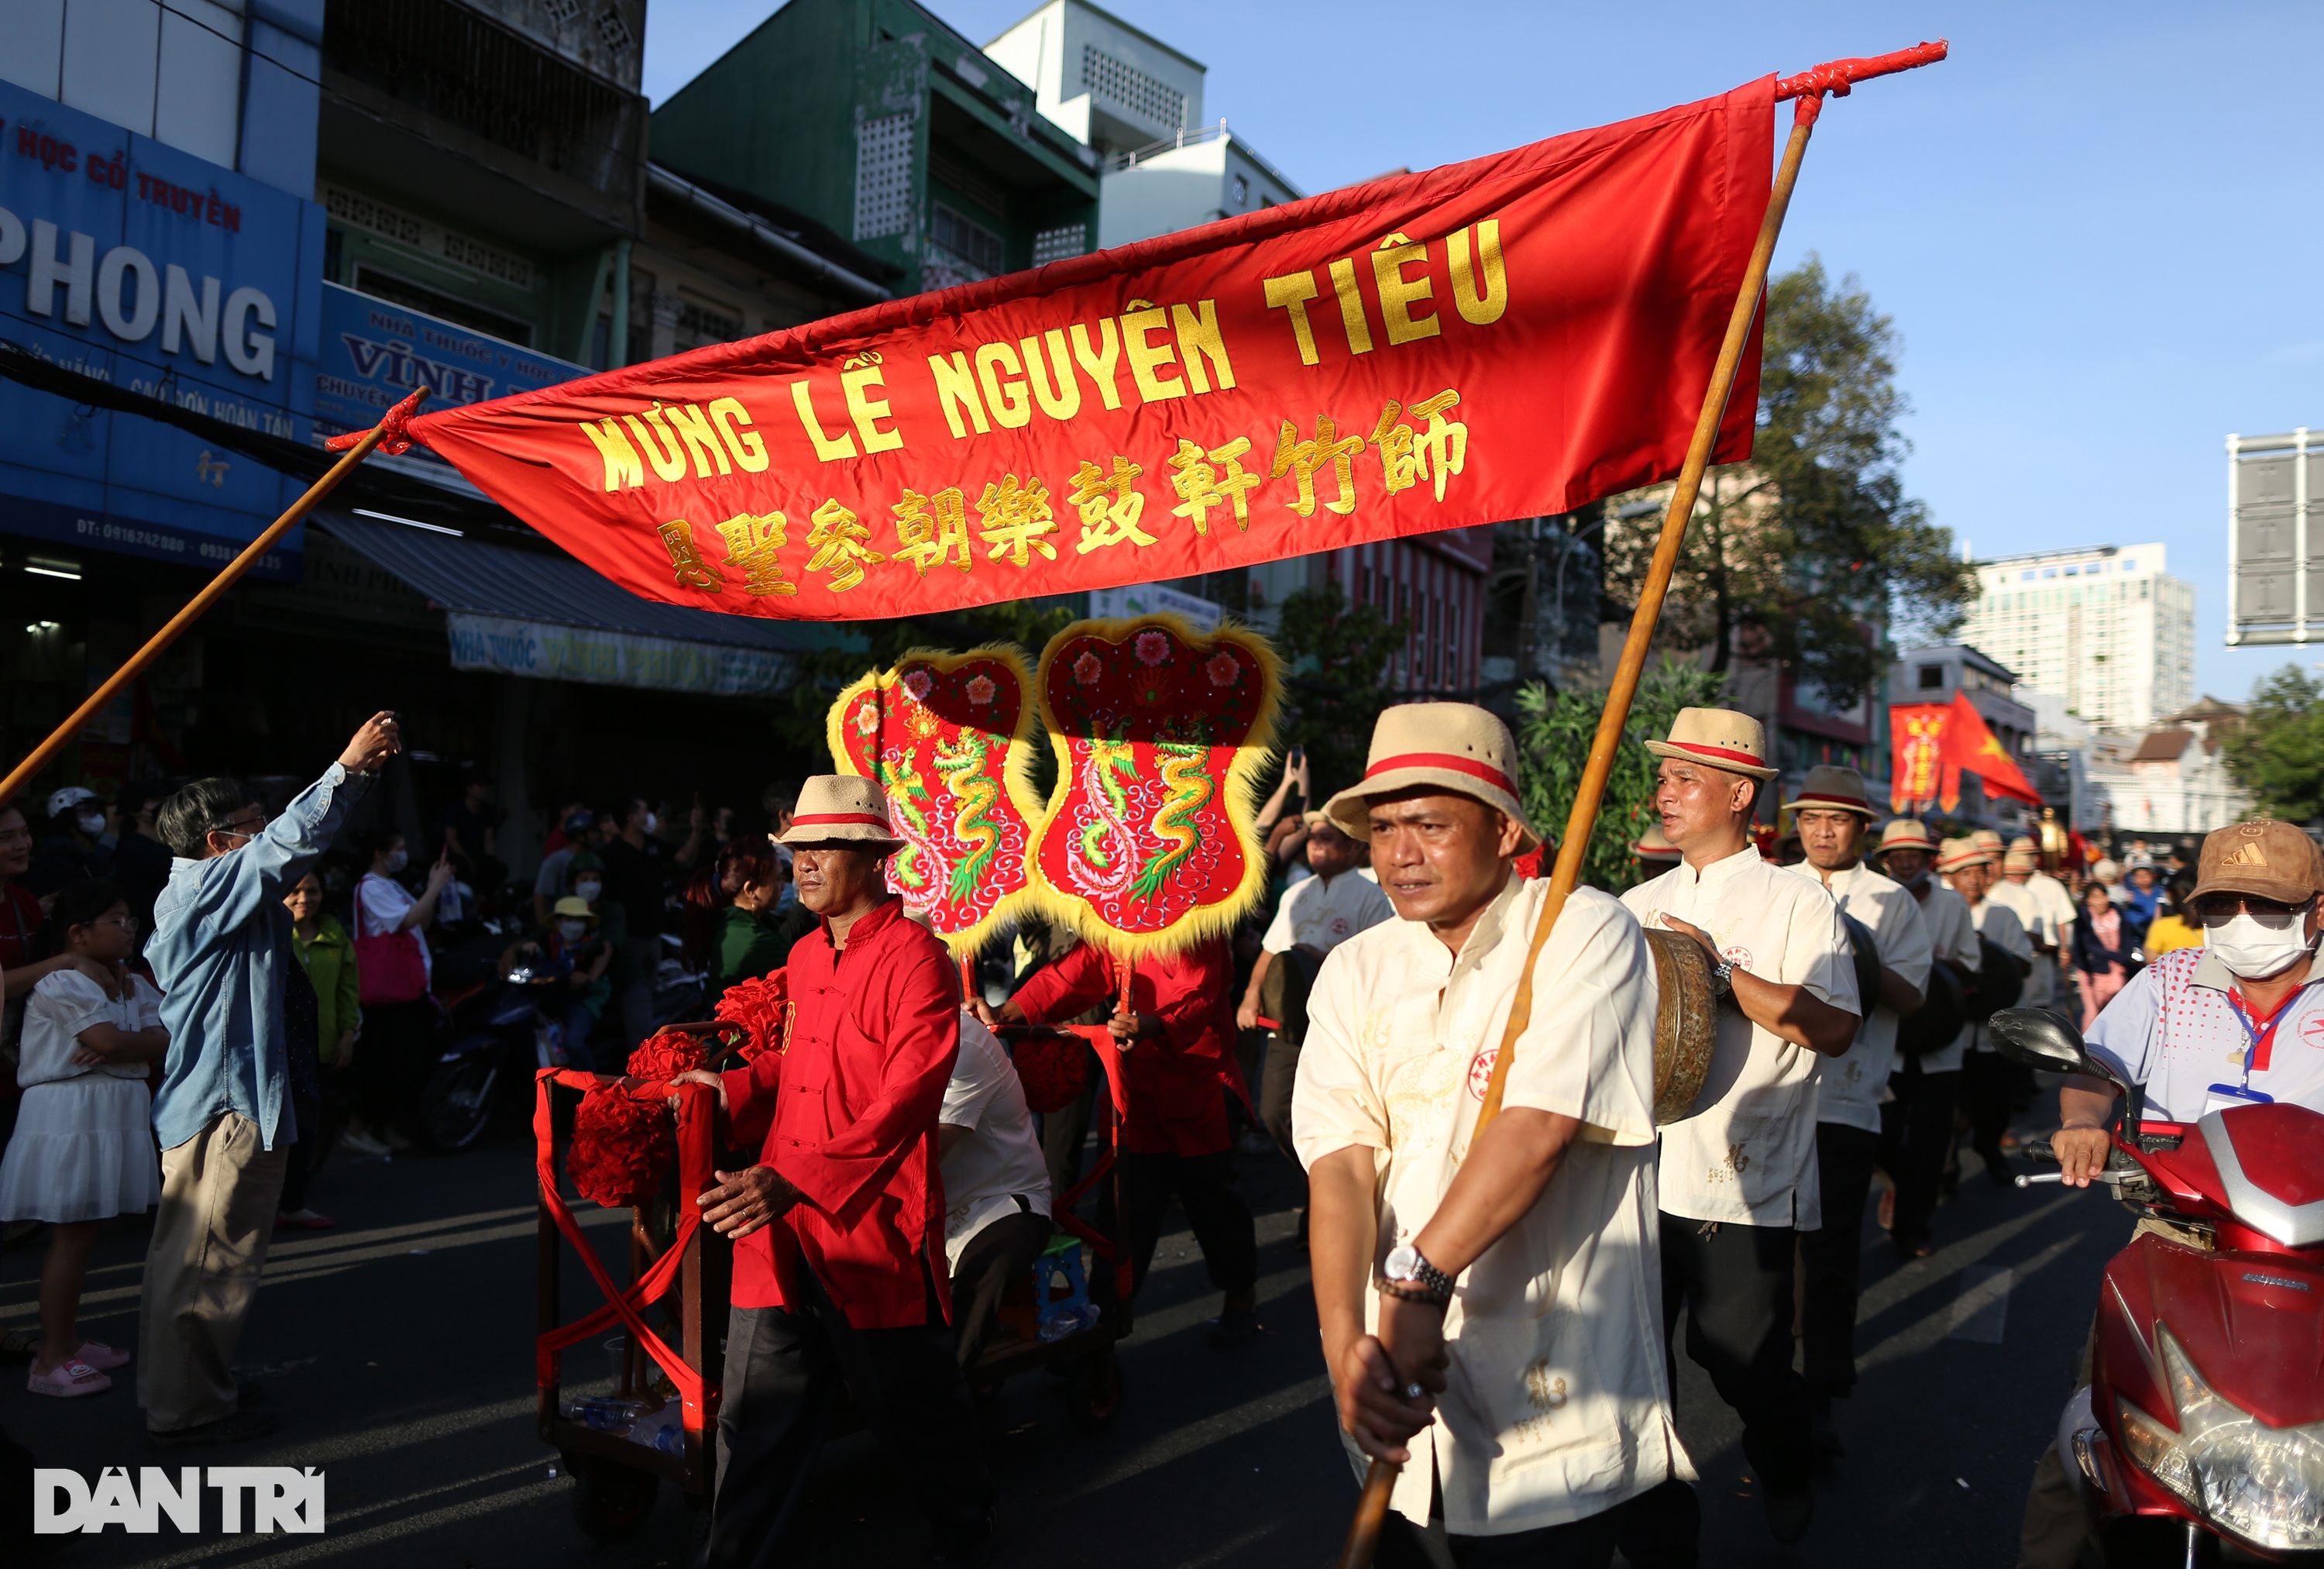 Tiên nữ, Bát Tiên cùng xuống phố tại Lễ hội Tết Nguyên tiêu ở TPHCM - 2